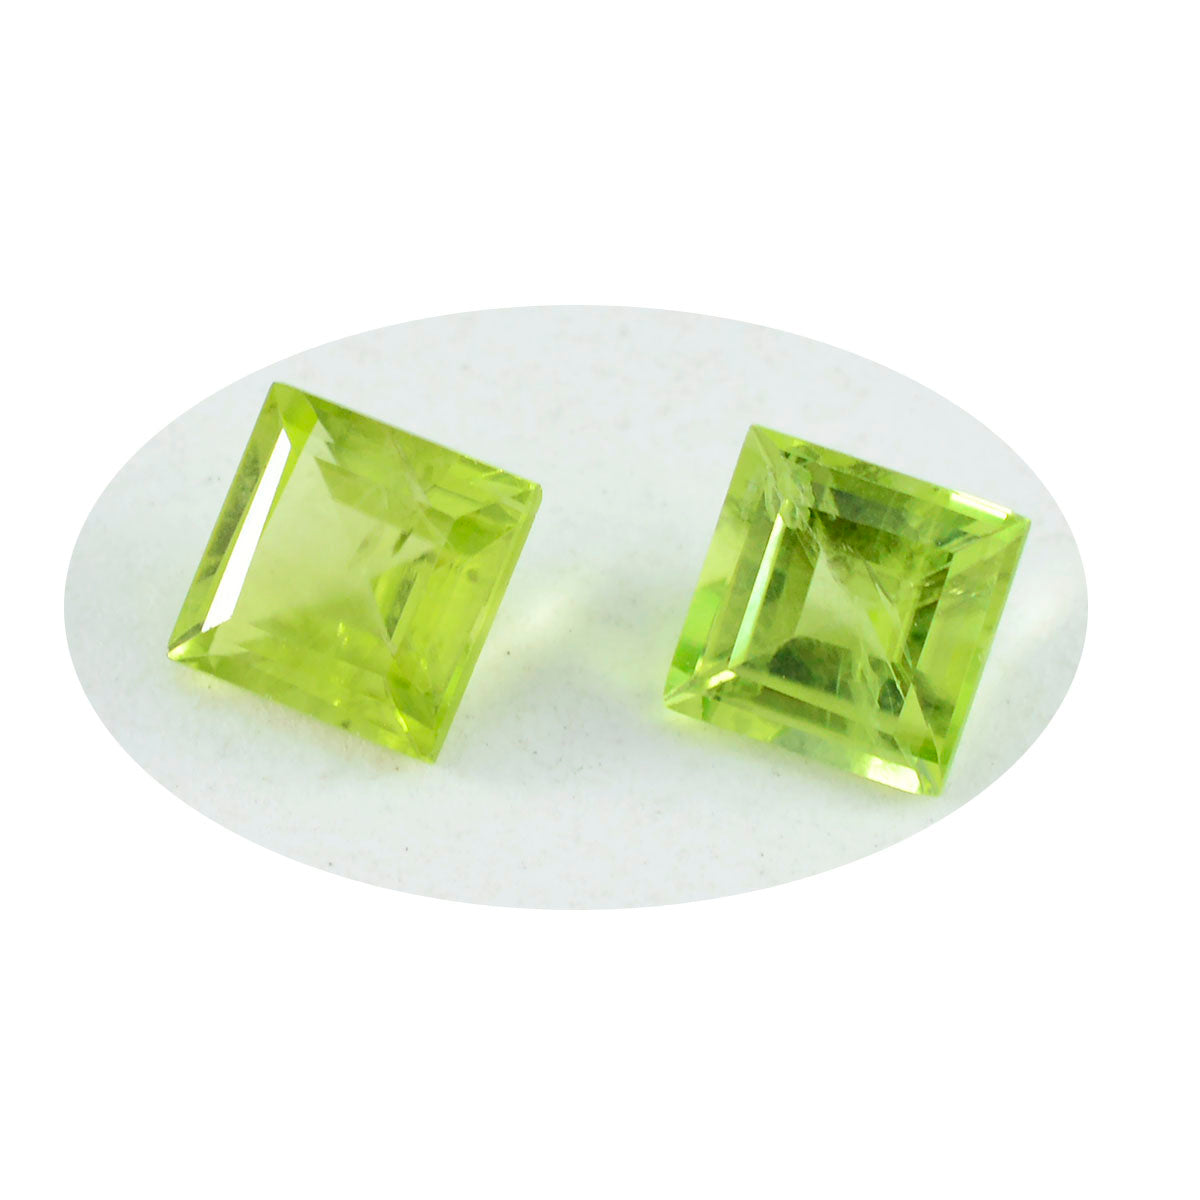 Riyogems 1 pièce péridot vert naturel à facettes 10x10mm forme carrée belle qualité gemme en vrac